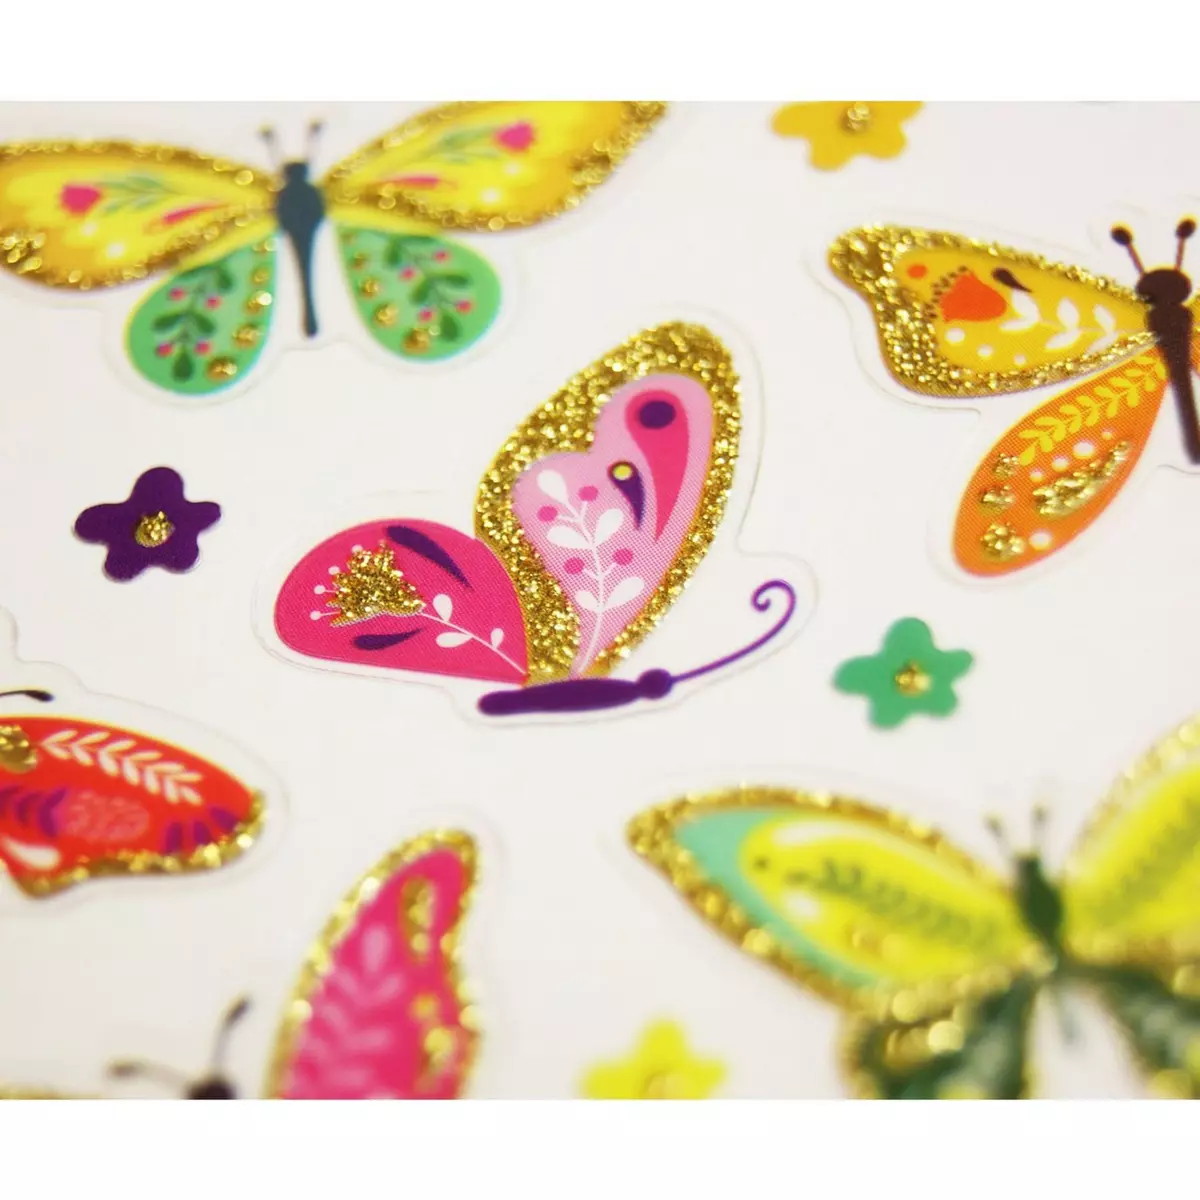  Autocollants - Papillons - Paillettes - 1,8 cm